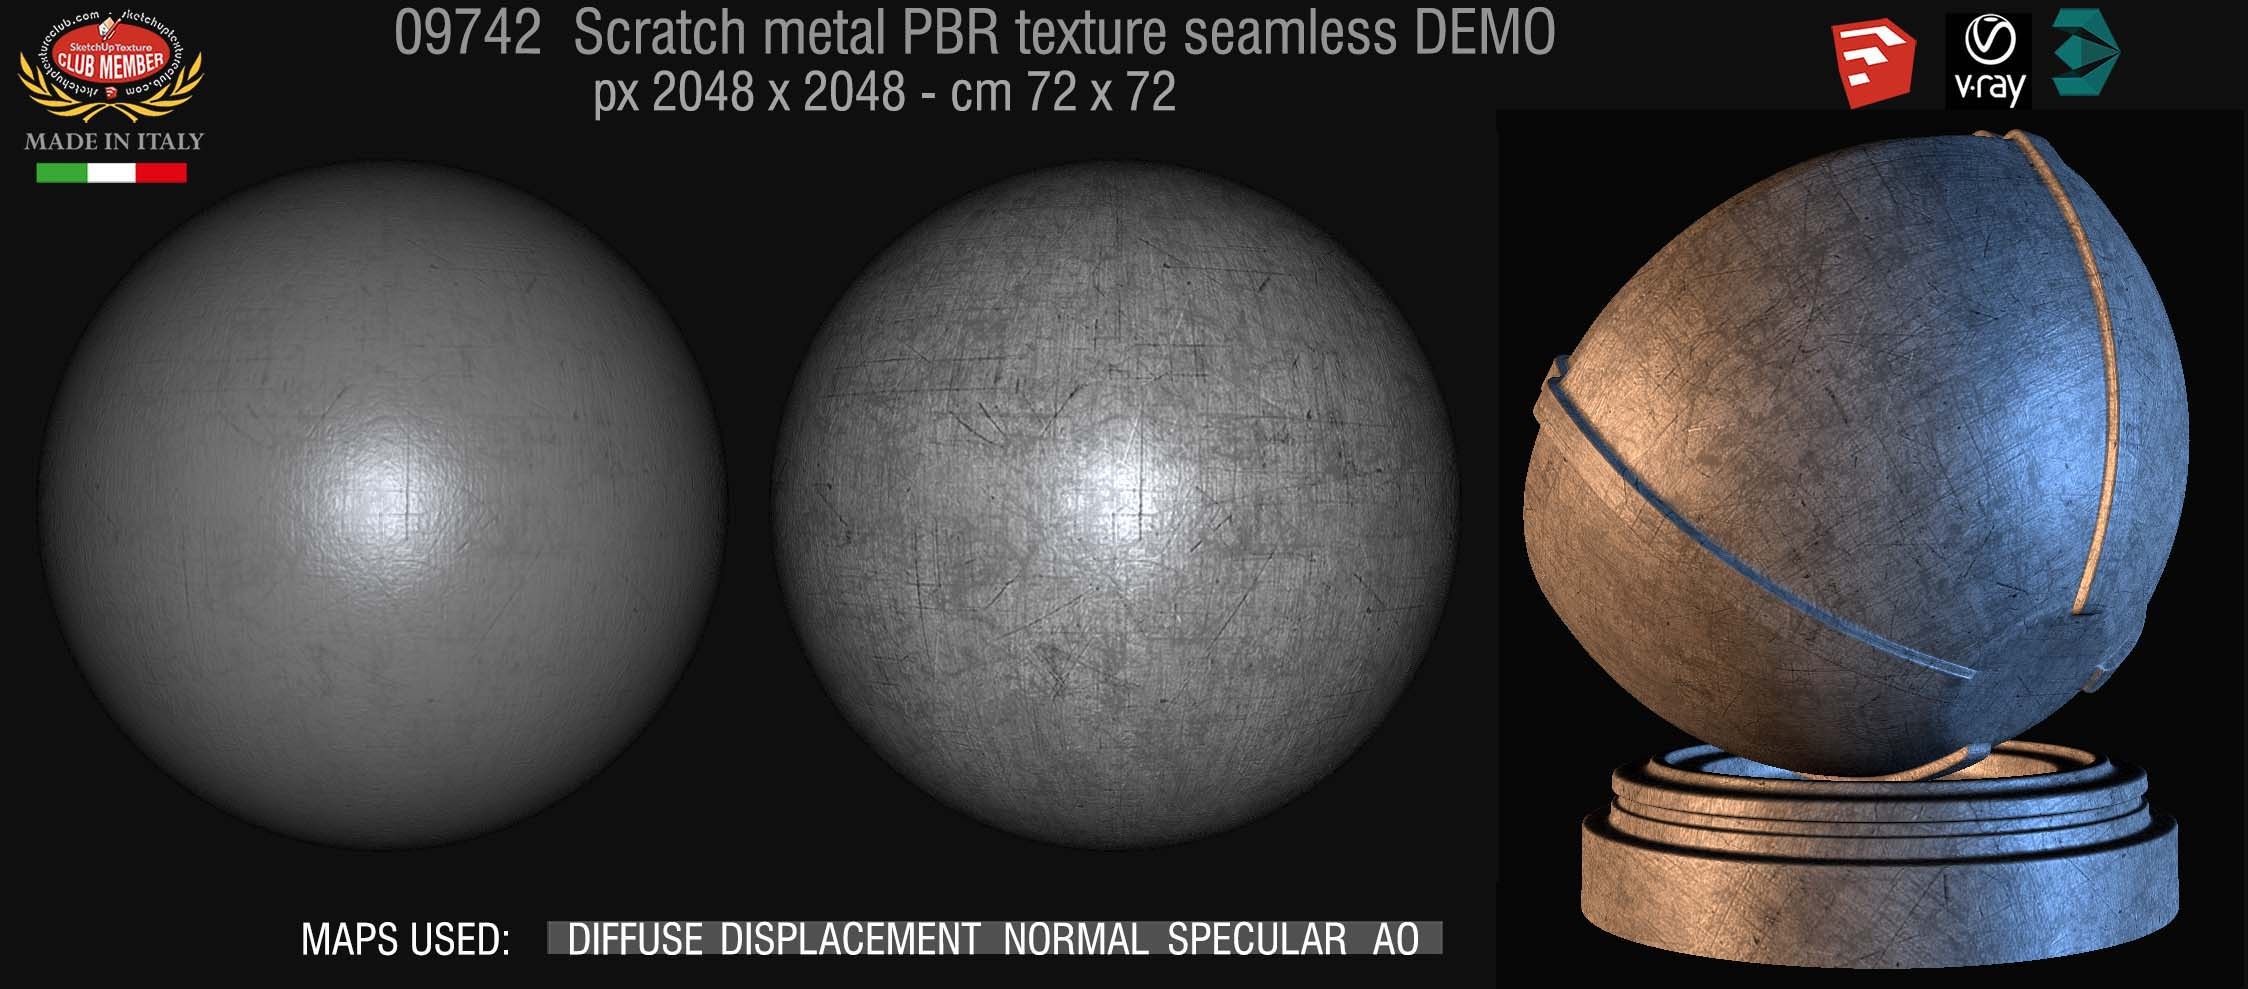 09742 Scratch metal PBR texture seamless DEMO